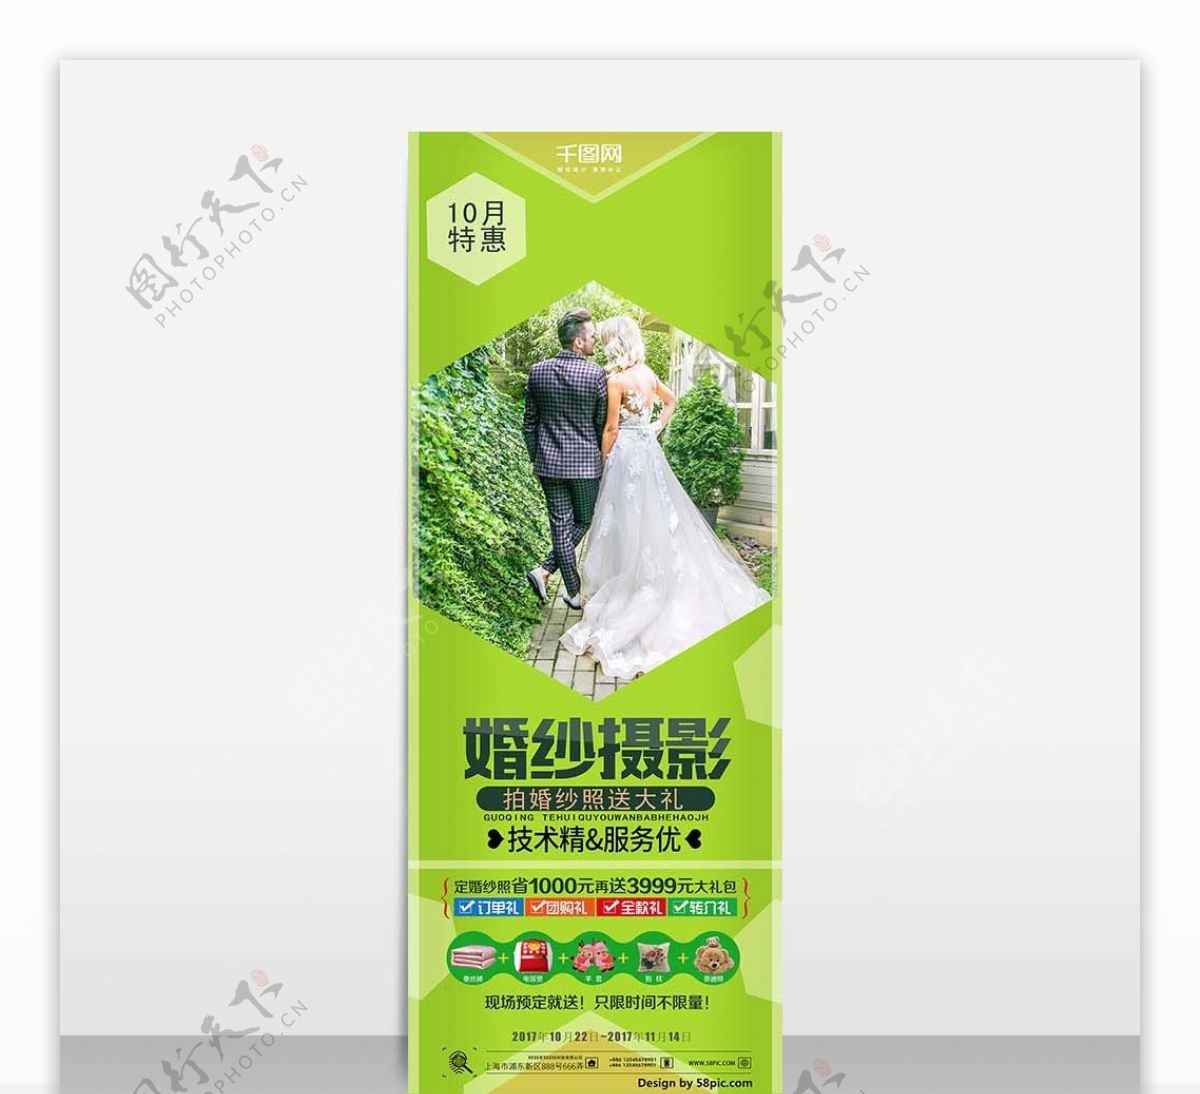 绿色清新简洁婚纱摄影展架设计